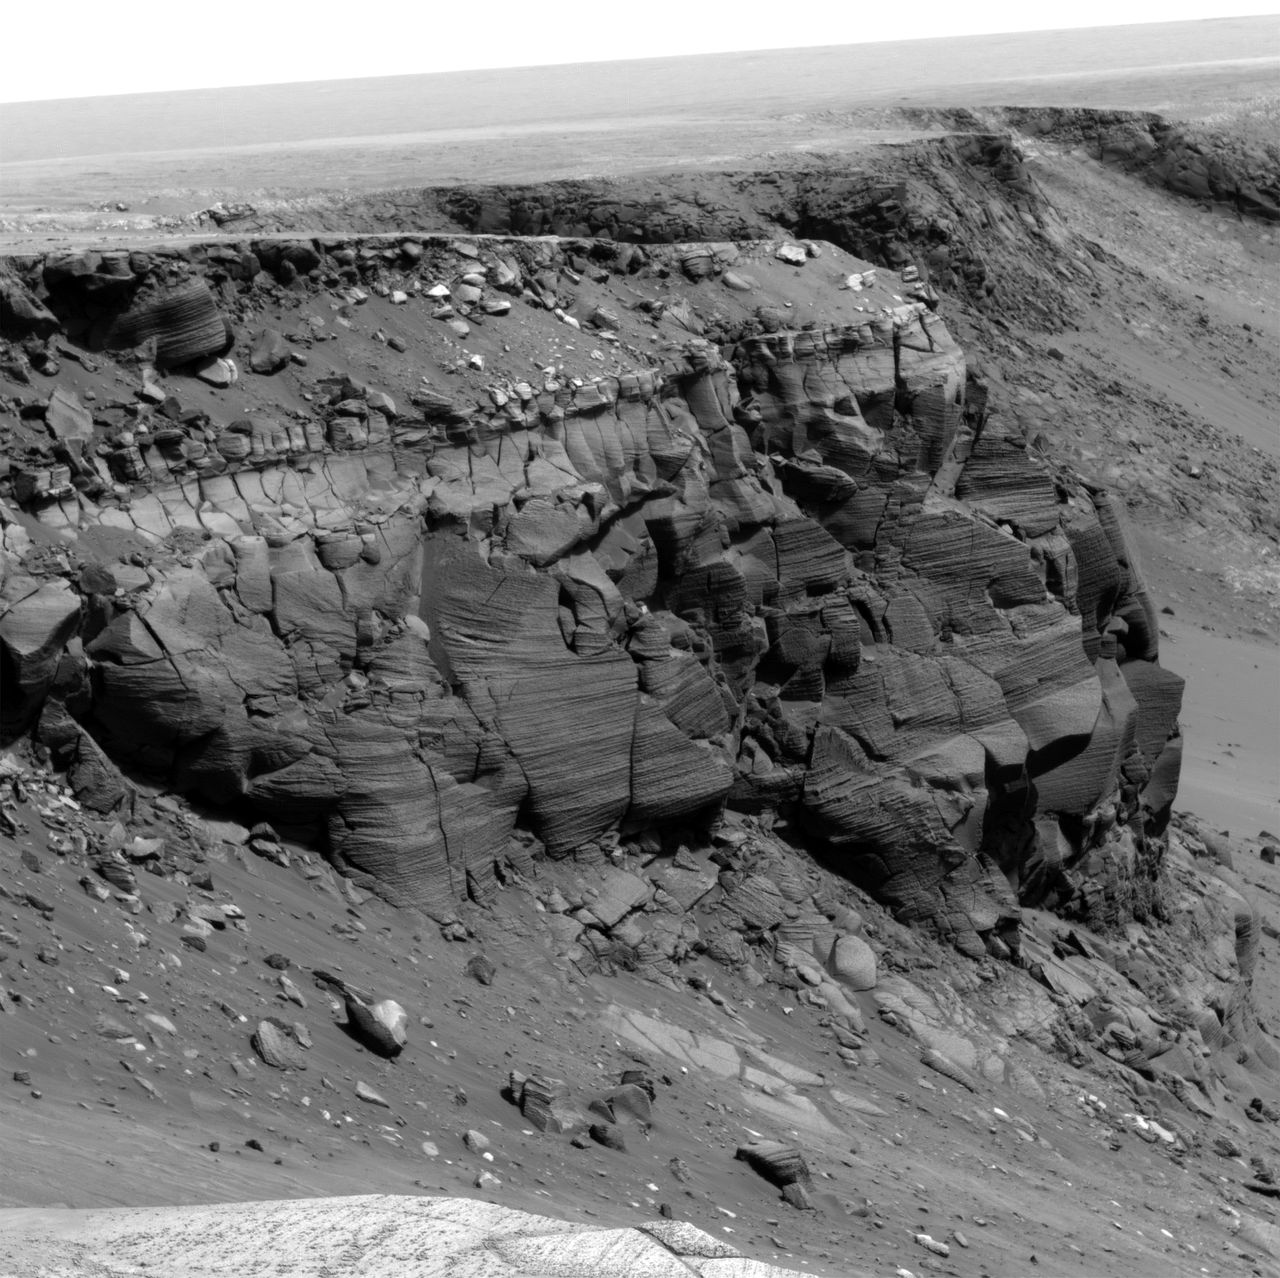 Cape St. Vincent, noordelijk van de Victoriakrater op Mars, 12 meter hoog, gefotografeerd door Opportunity op 7 mei 2007. De deel van de klif bestaat uit oude zandduinen. Foto NASA